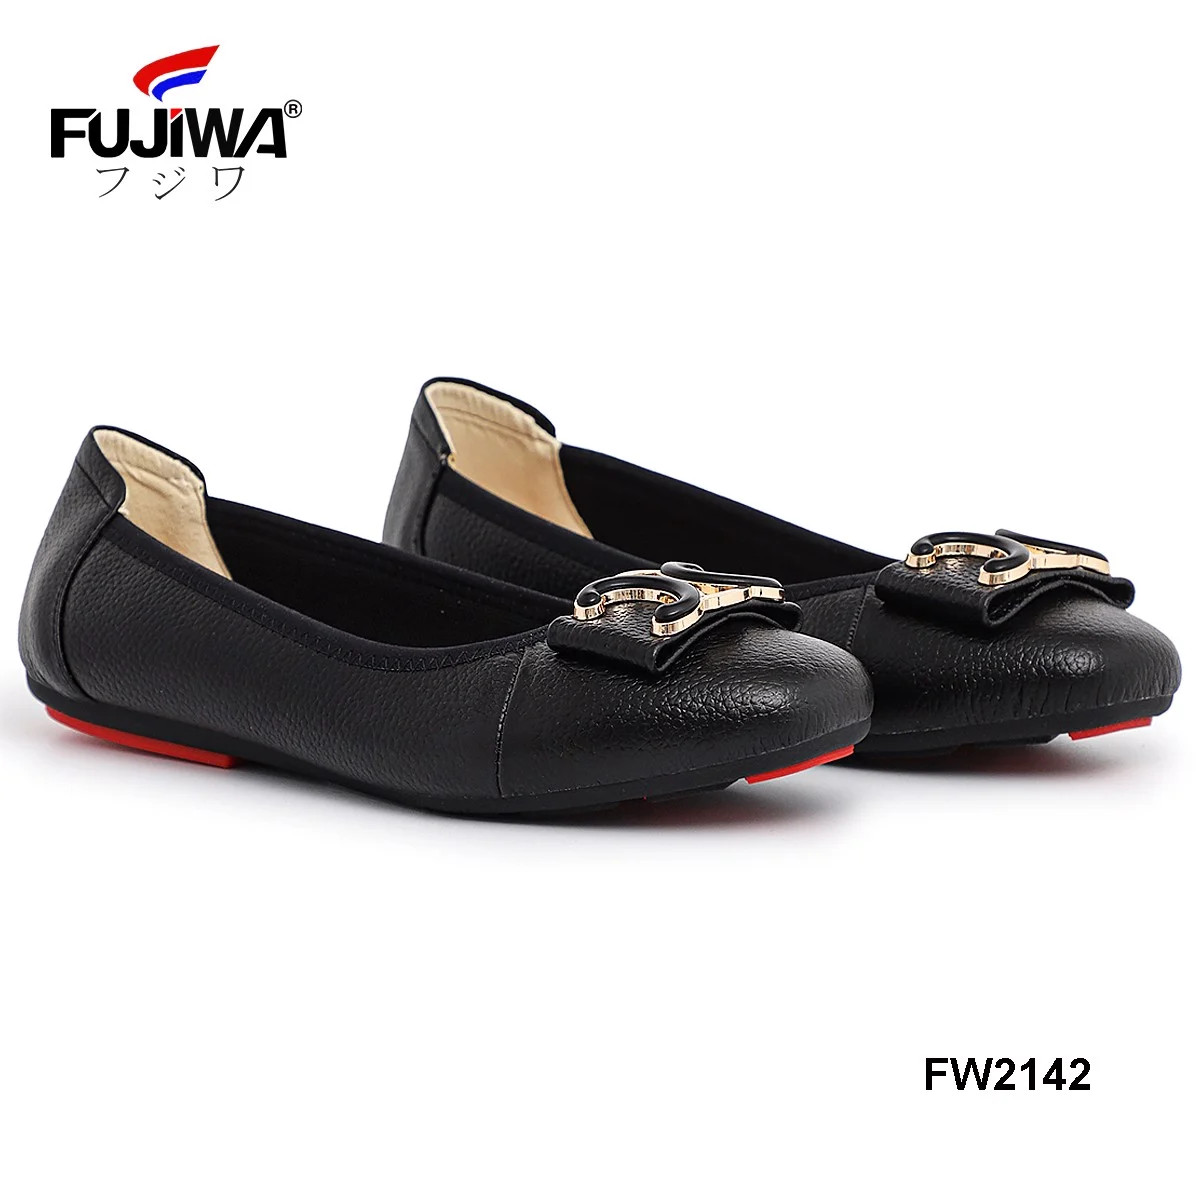 Giày Nữ Da Bò FUJIWA - FW2142. Da Thật Cao Cấp. Được Đóng Thủ Công